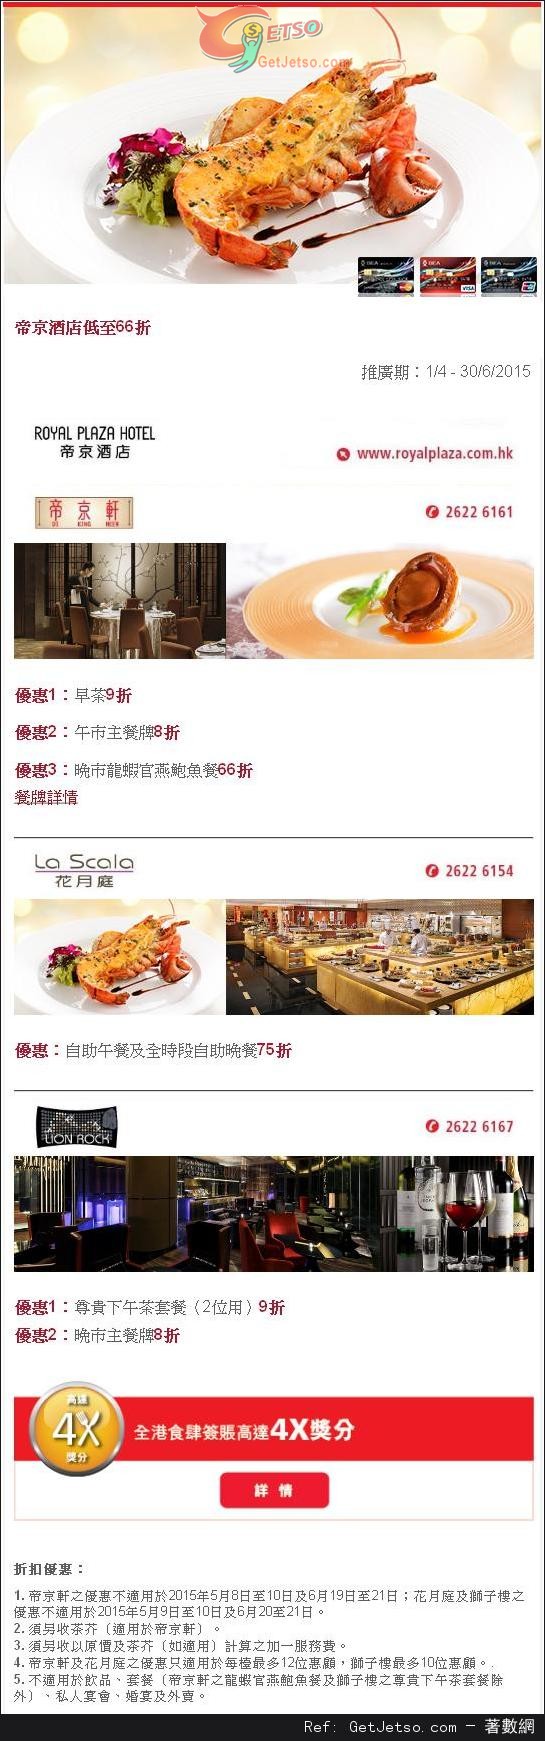 東亞信用卡享帝京酒店餐飲低至66折優惠(至15年6月30日)圖片1